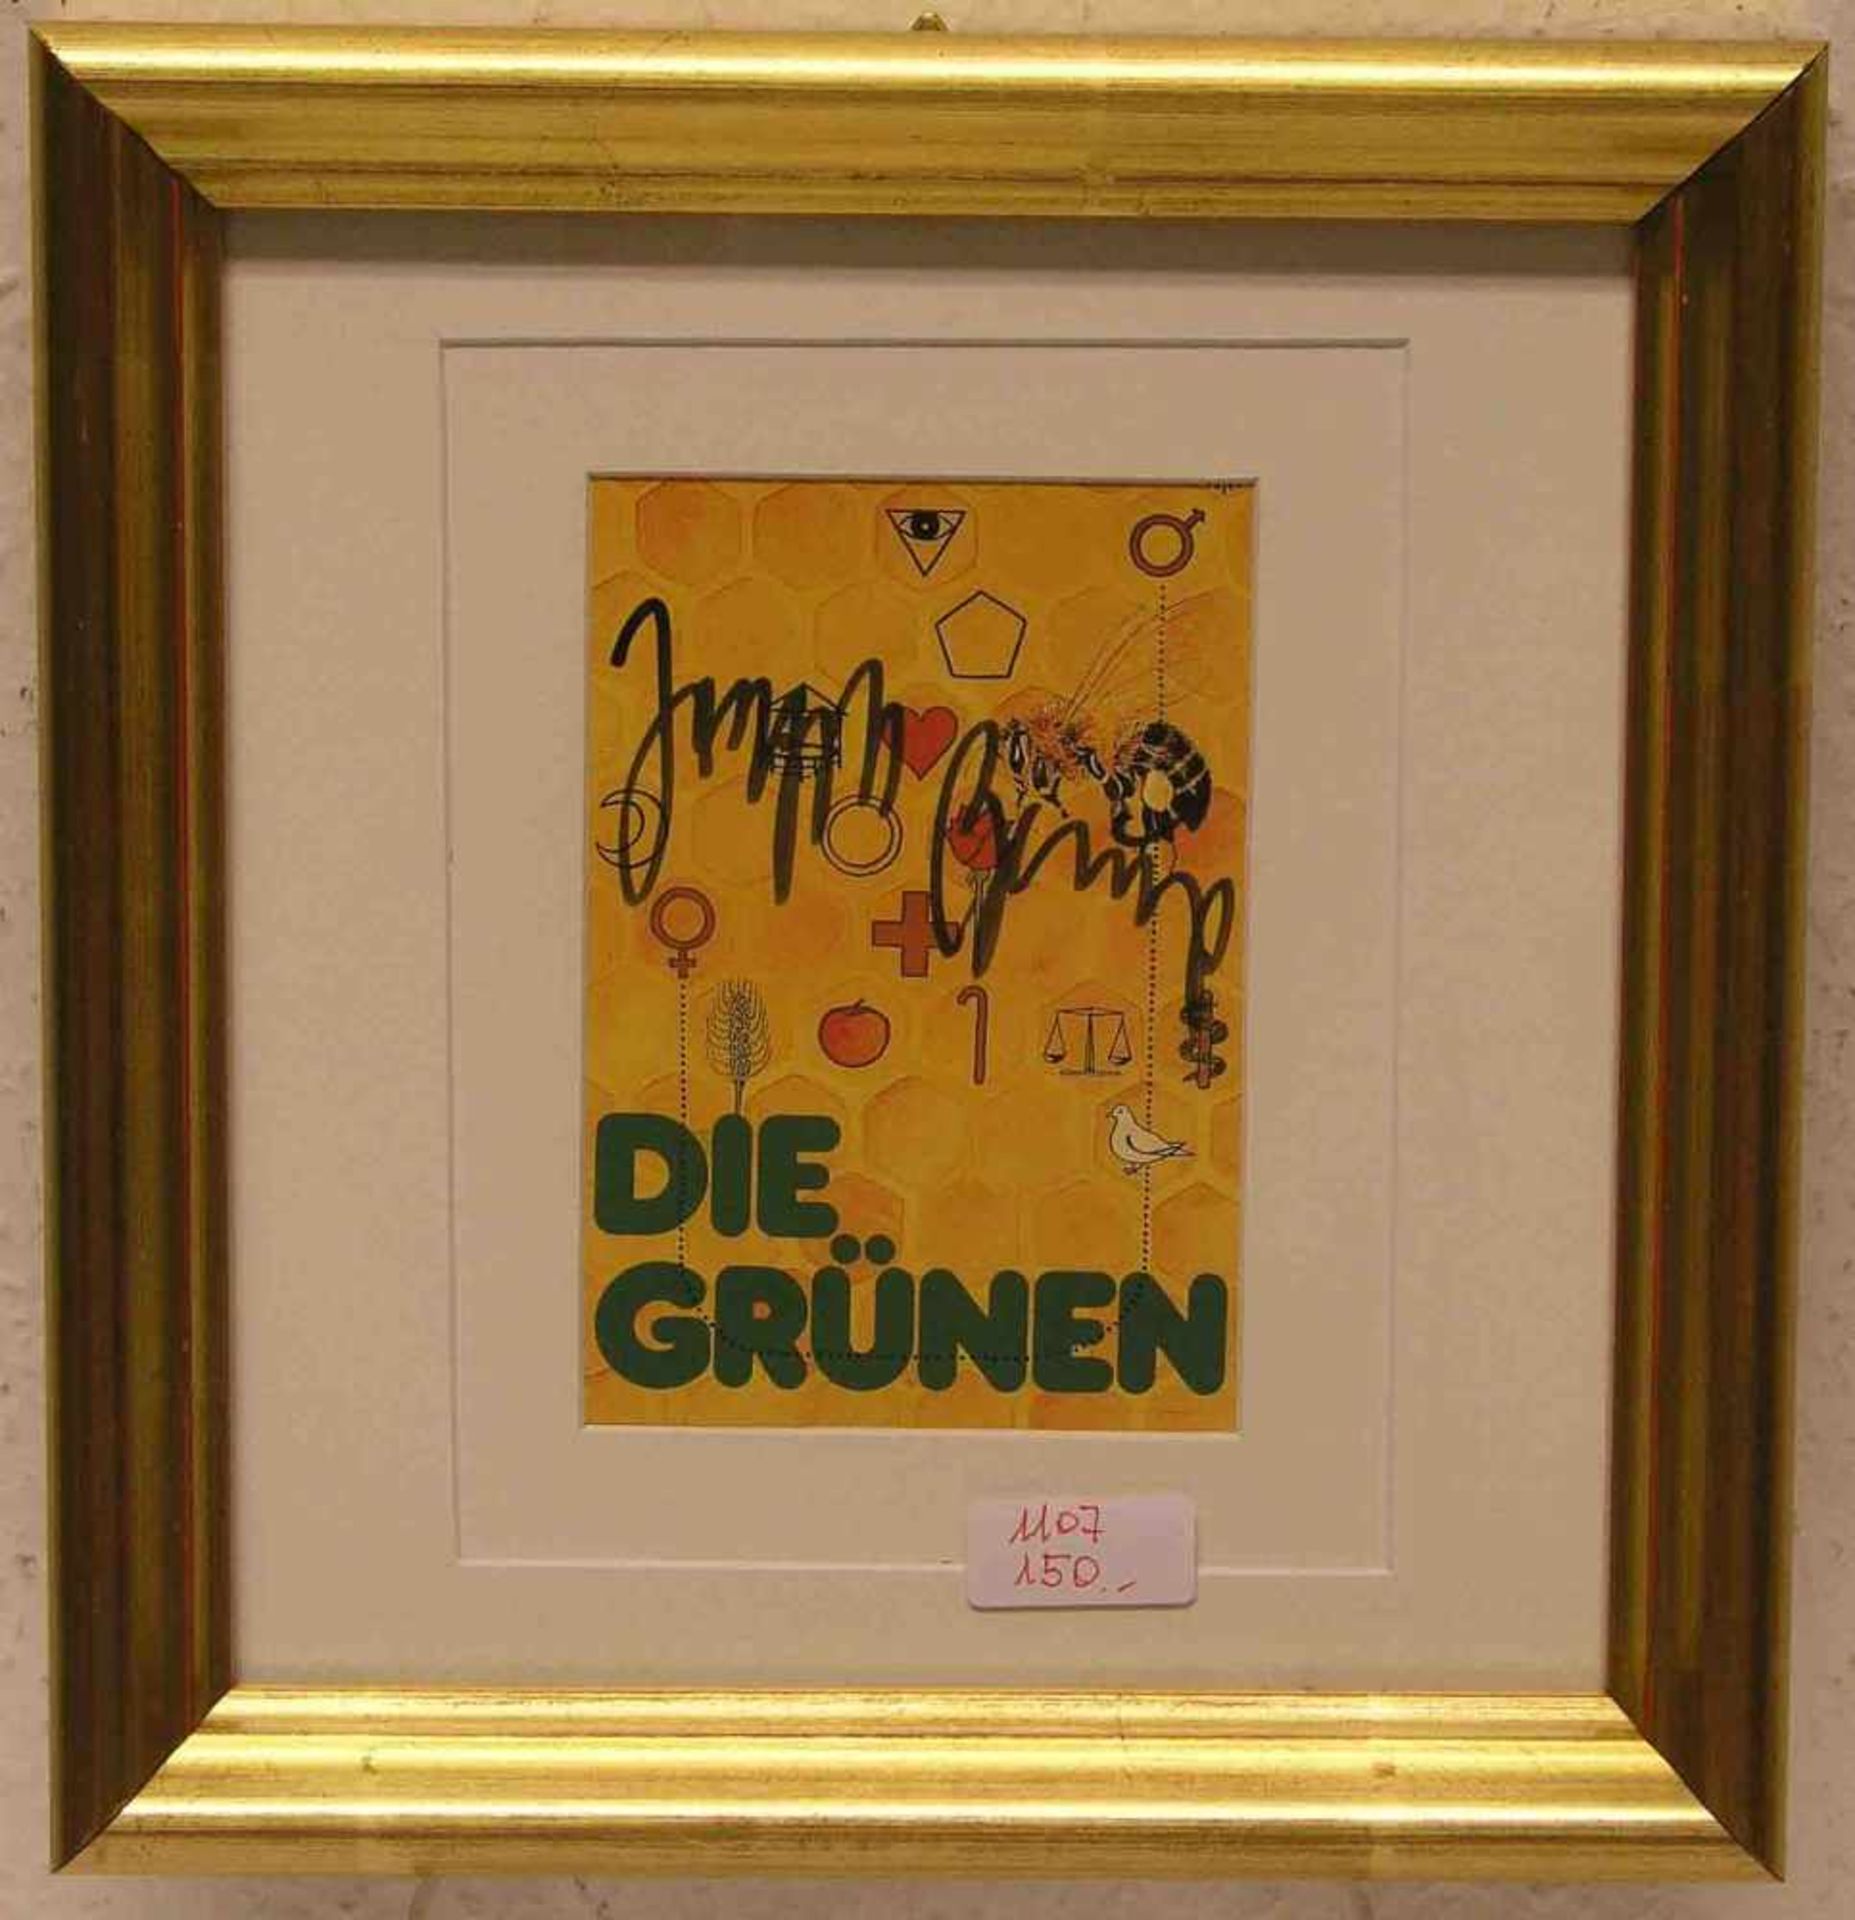 Beuys, Joseph: "Die Grünen". Multiple, signiert, 28 x 26cm, Rahmen mit Glas.- - -20.17 % buyer's